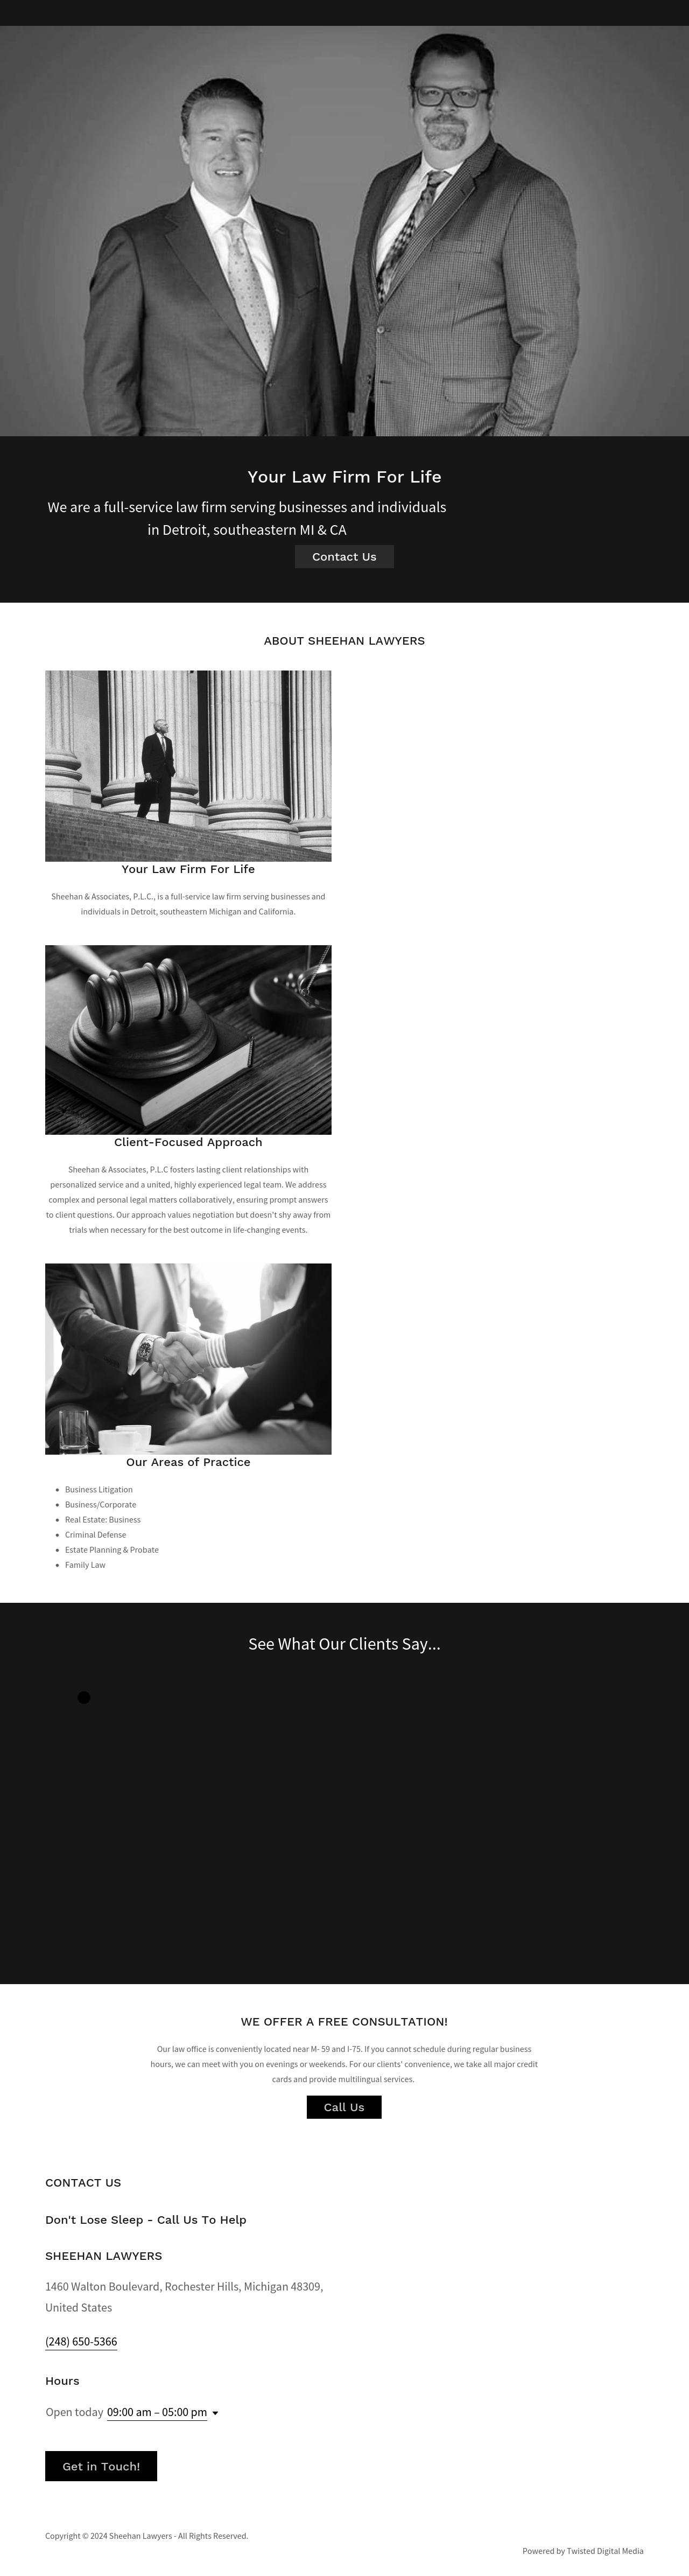 Sheehan & Associates PLC - Rochester MI Lawyers